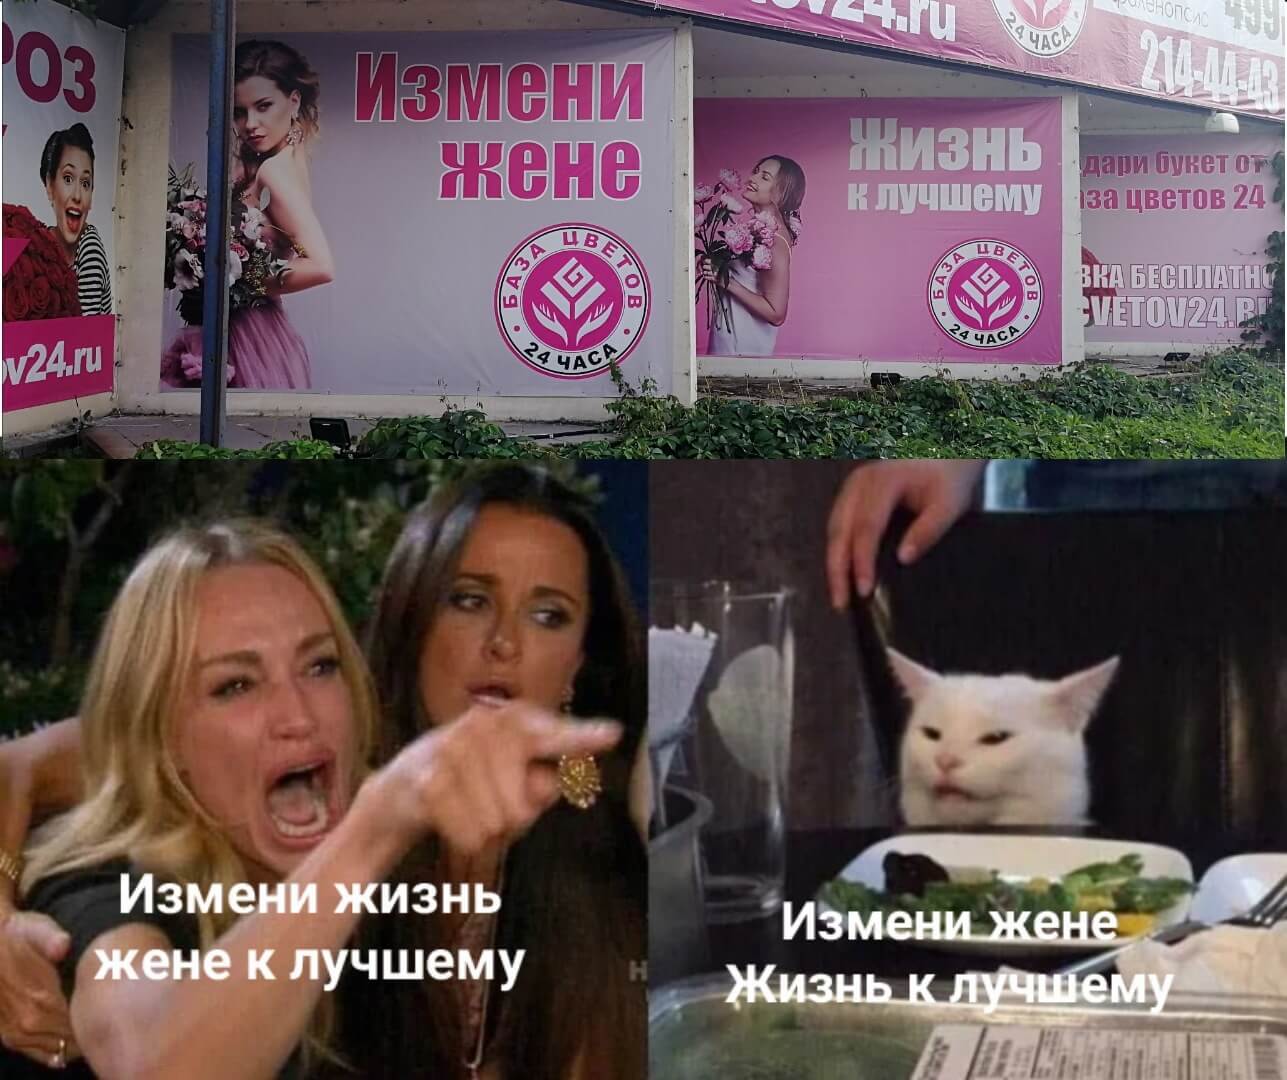 мем с орущей женщиной и котом "Измени жене"